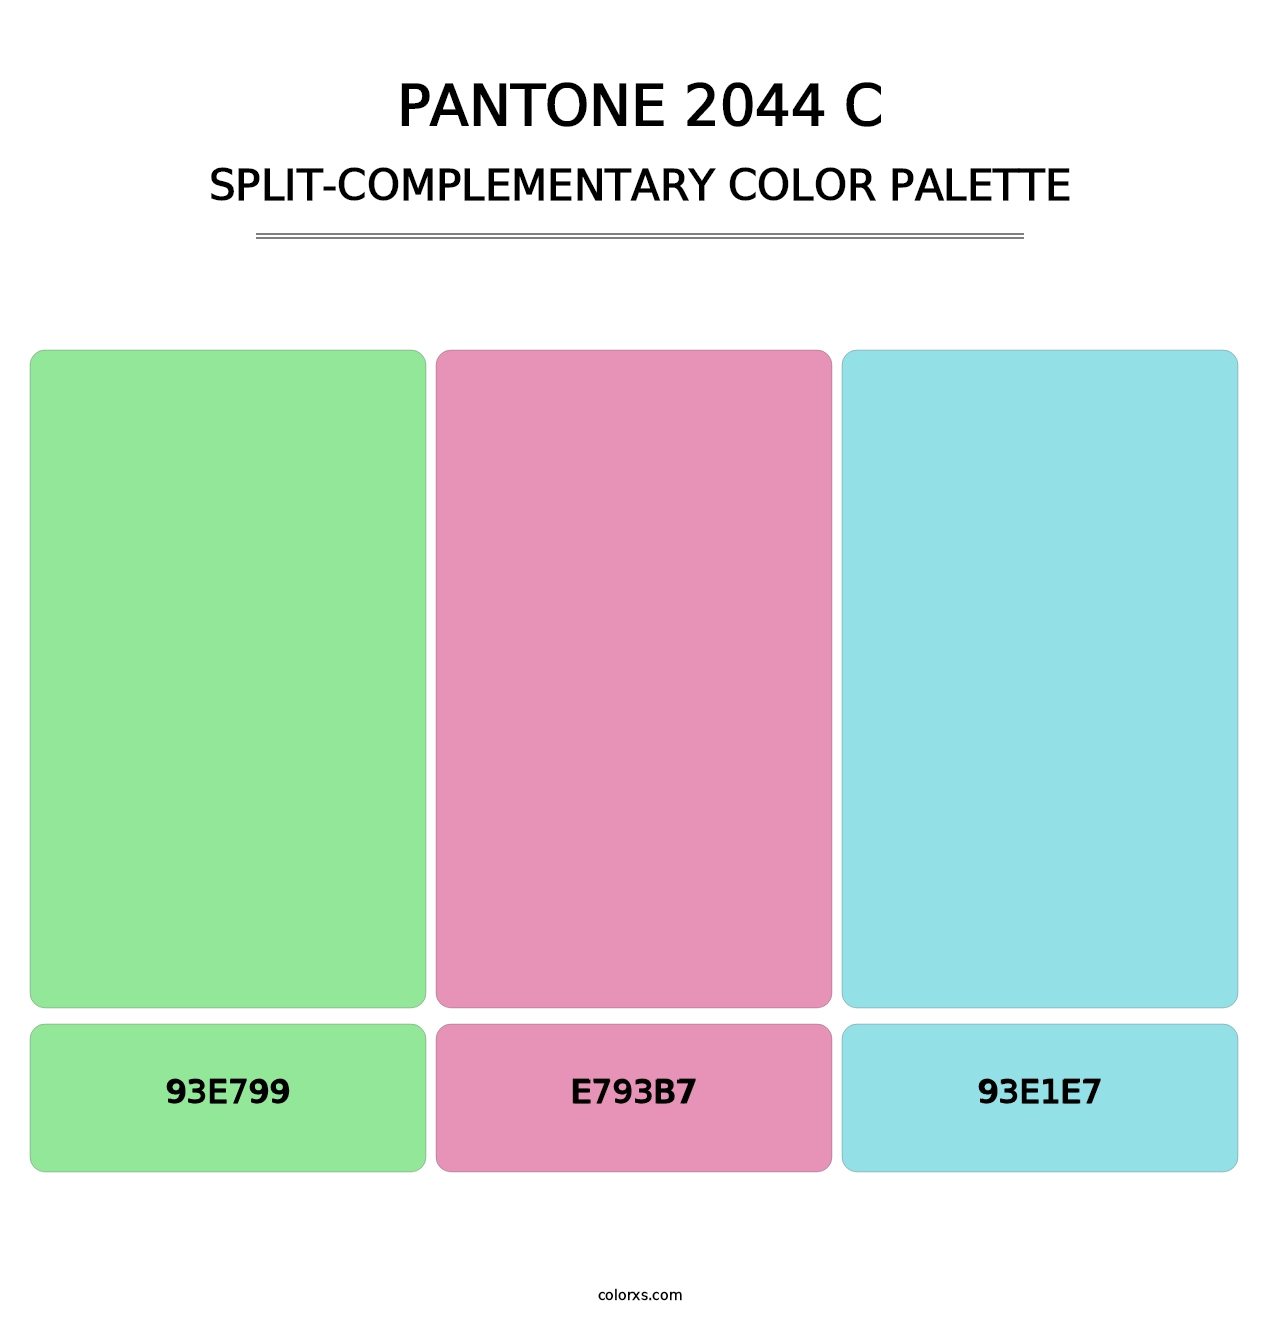 PANTONE 2044 C - Split-Complementary Color Palette